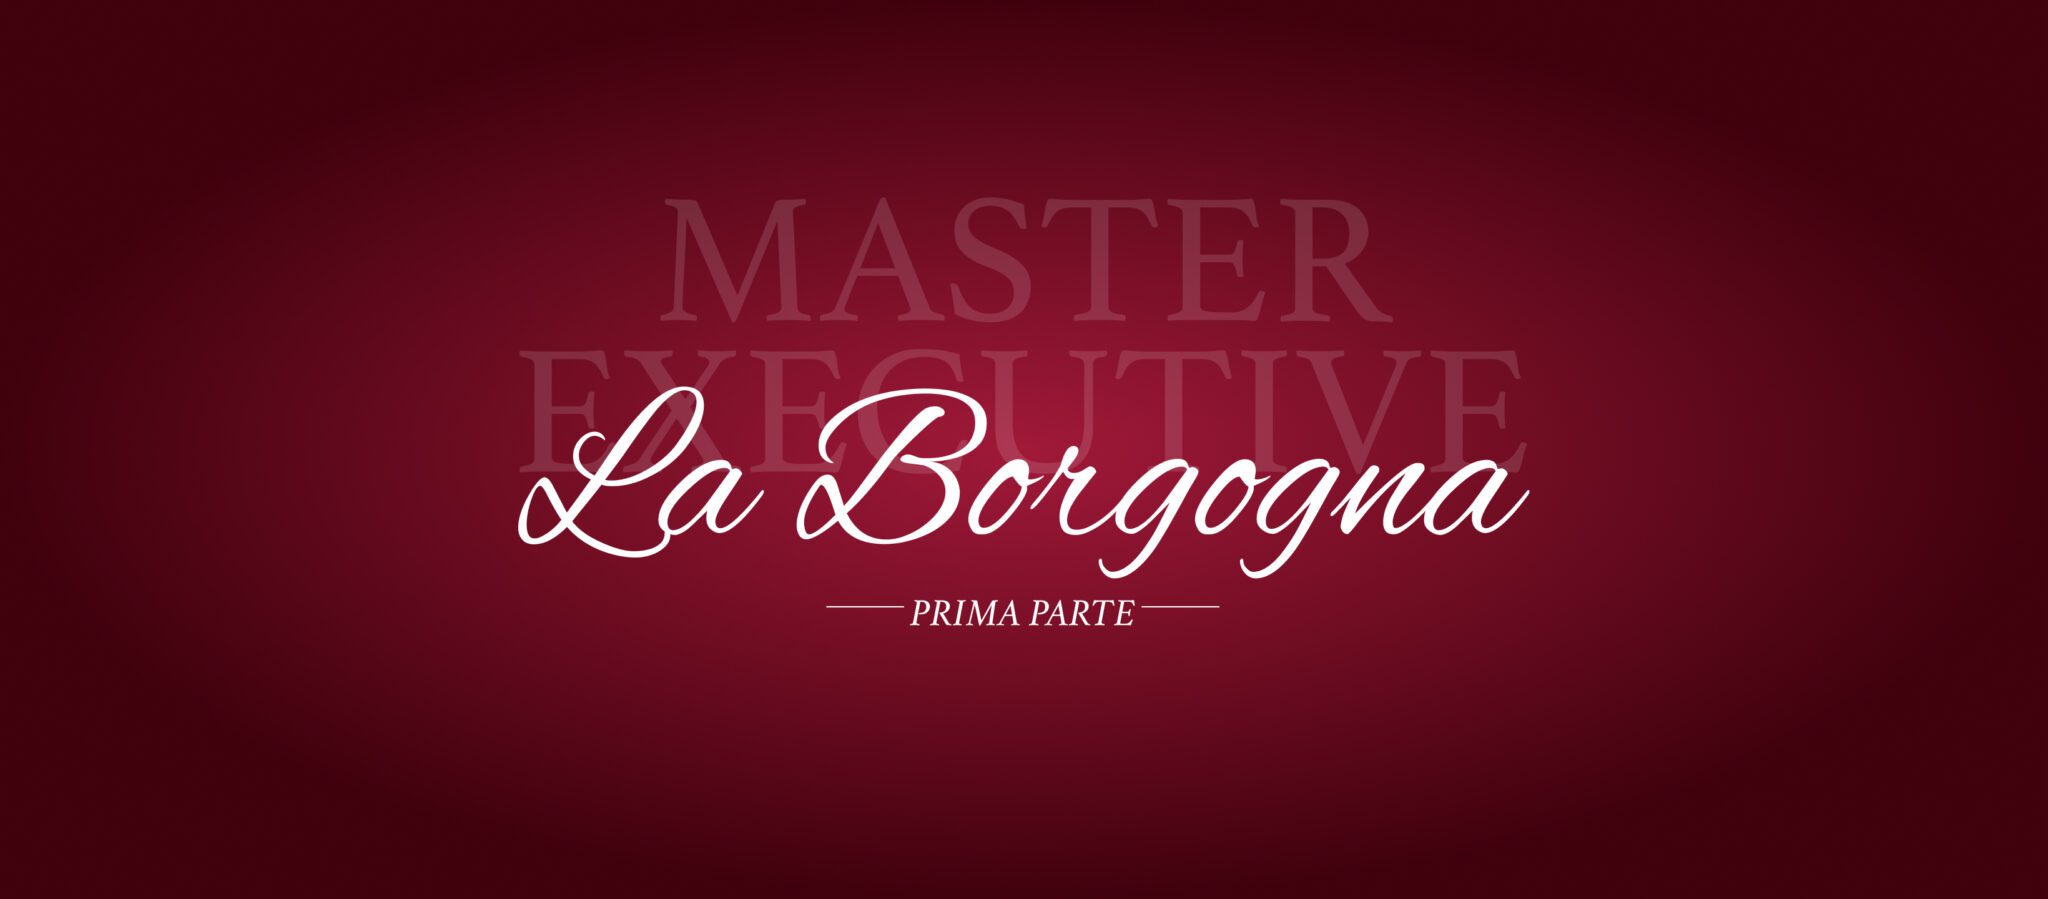 La Borgogna: Il Master Executive